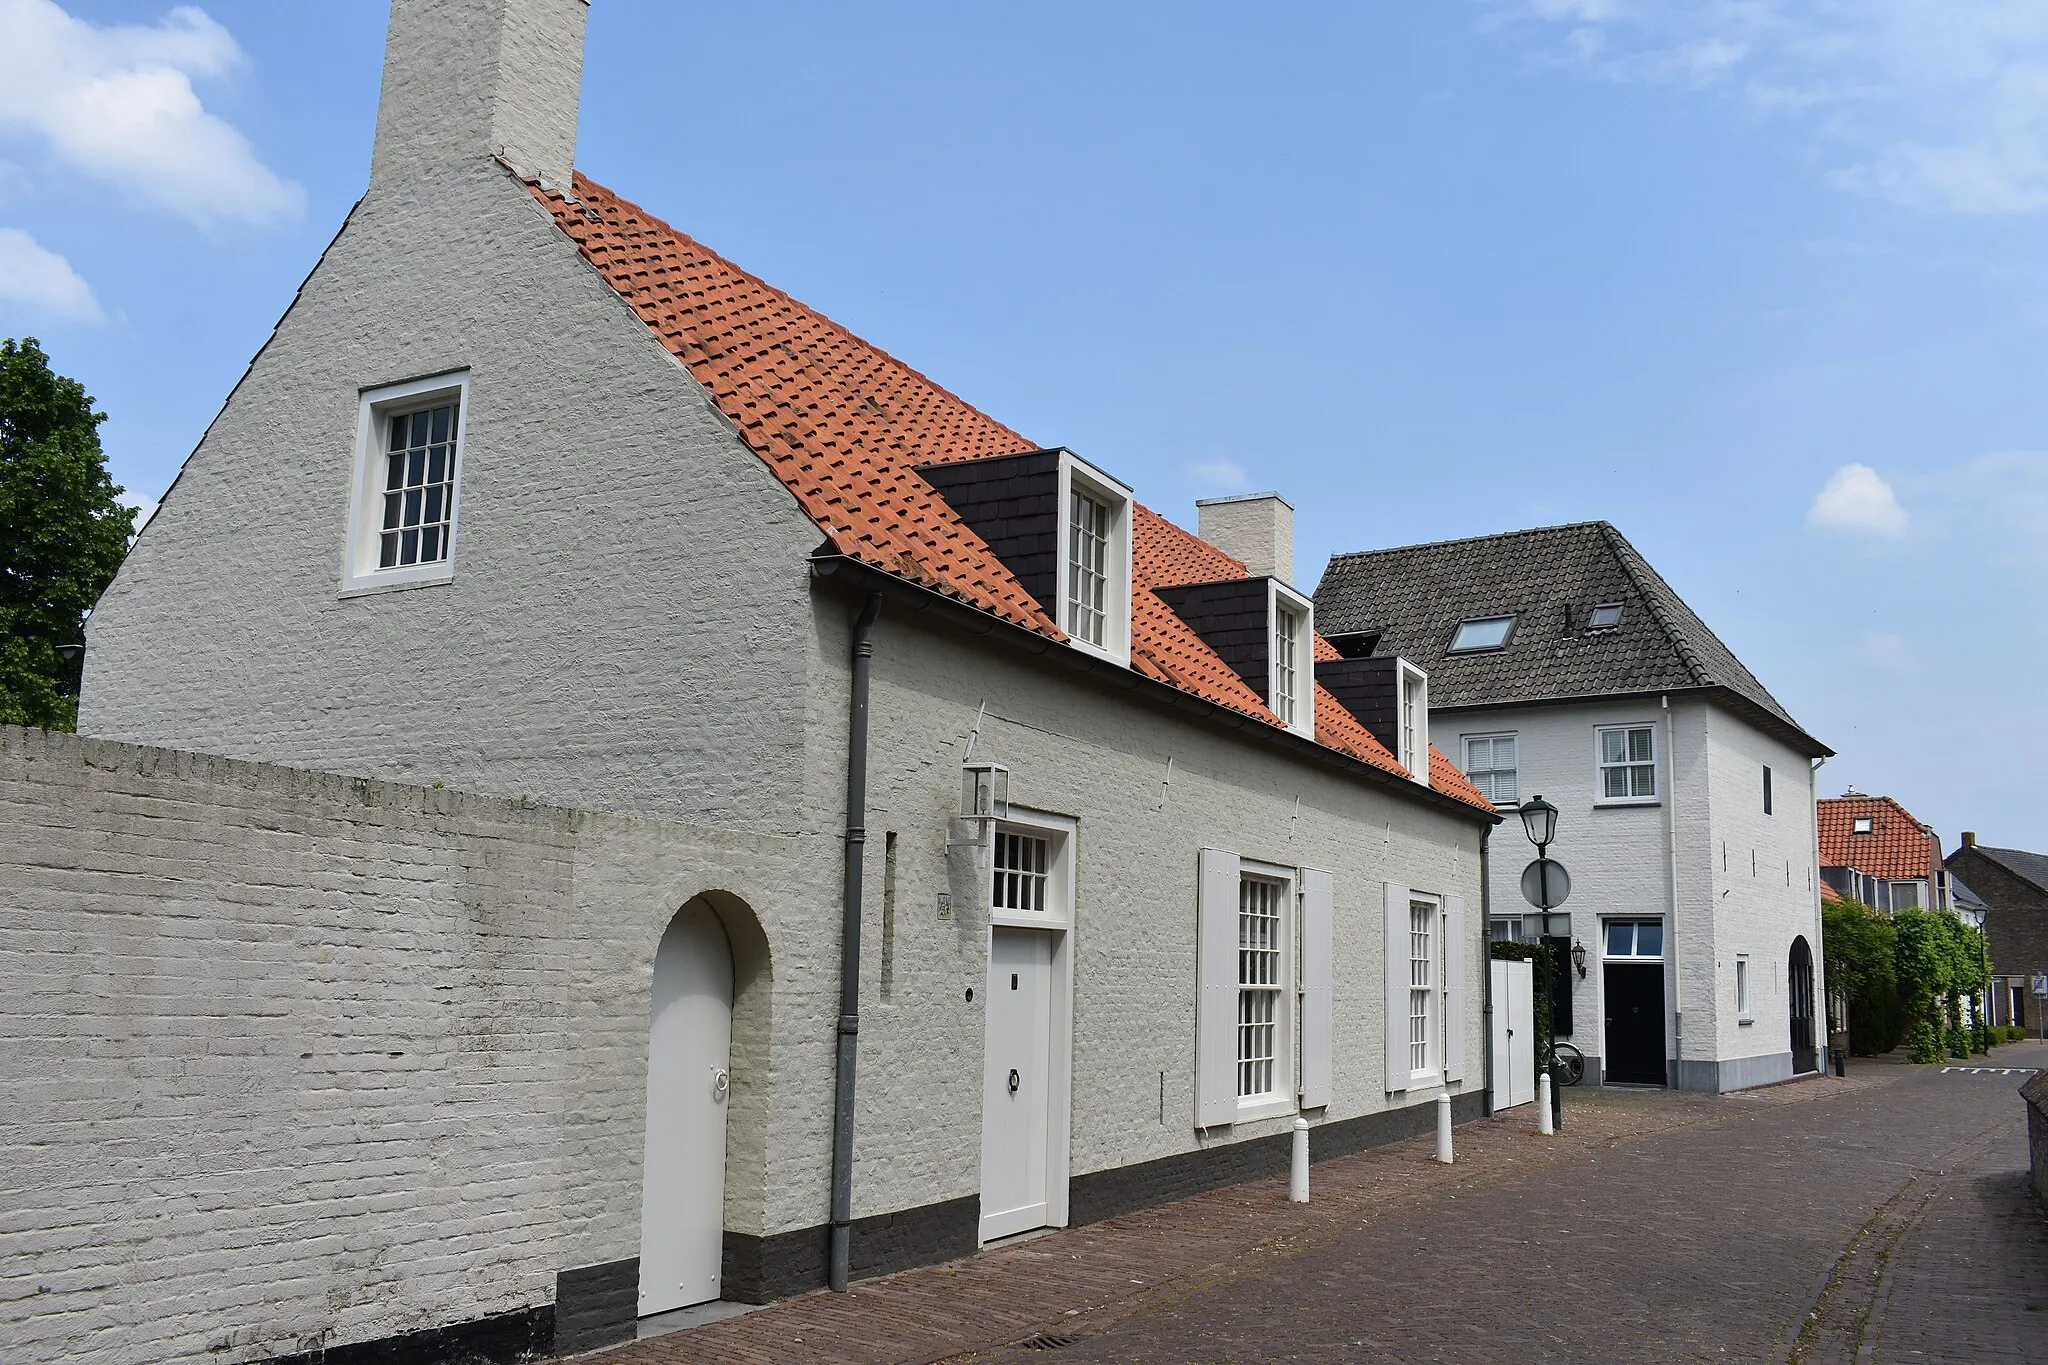 Image of Hilvarenbeek